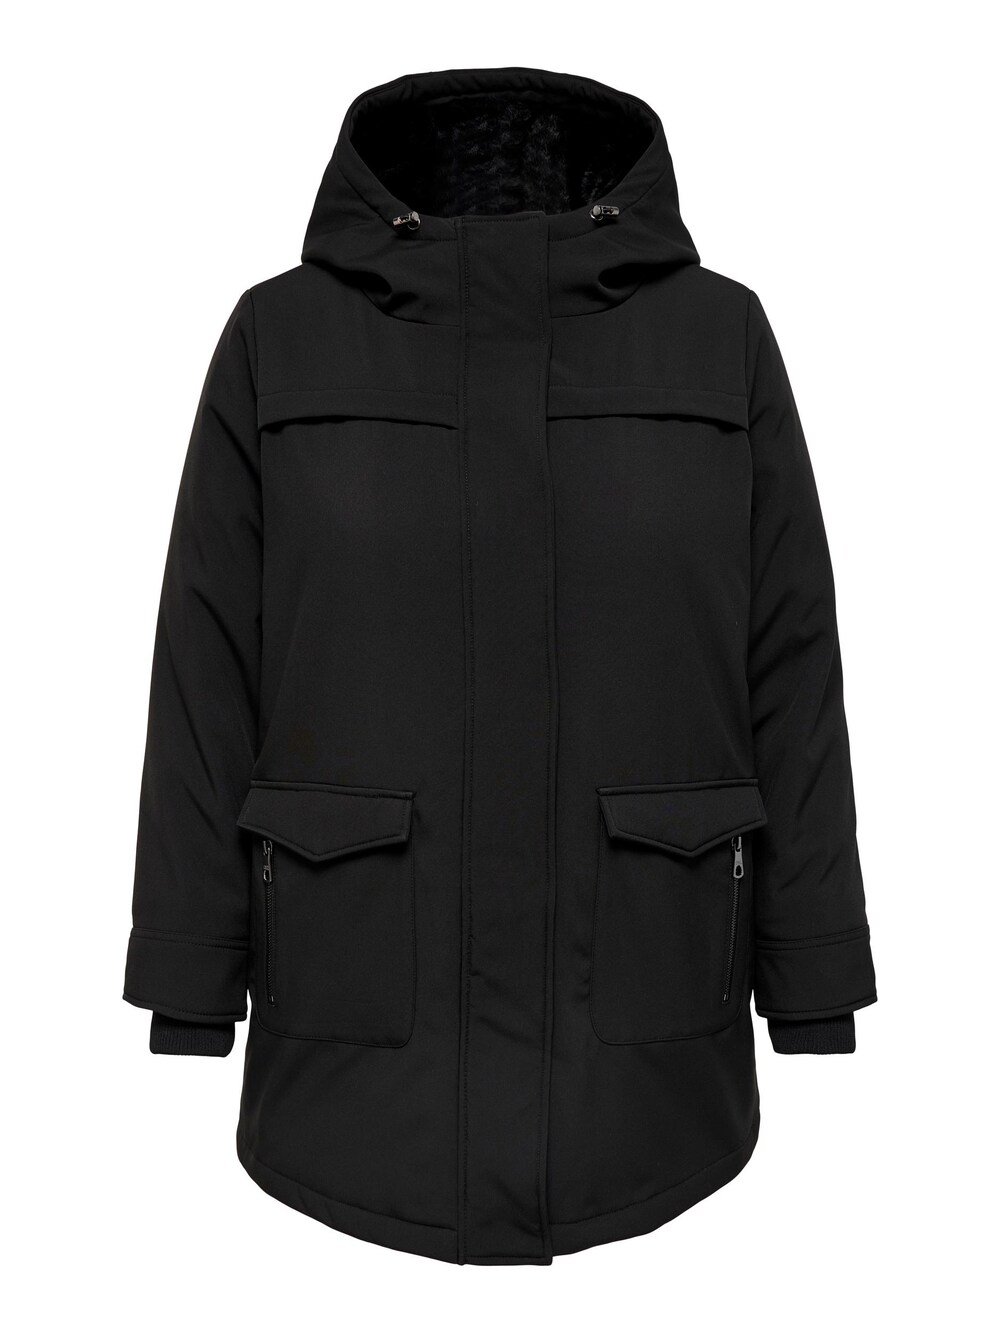 Межсезонное пальто ONLY Carmakoma Maastricht, черный межсезонное пальто only josie черный